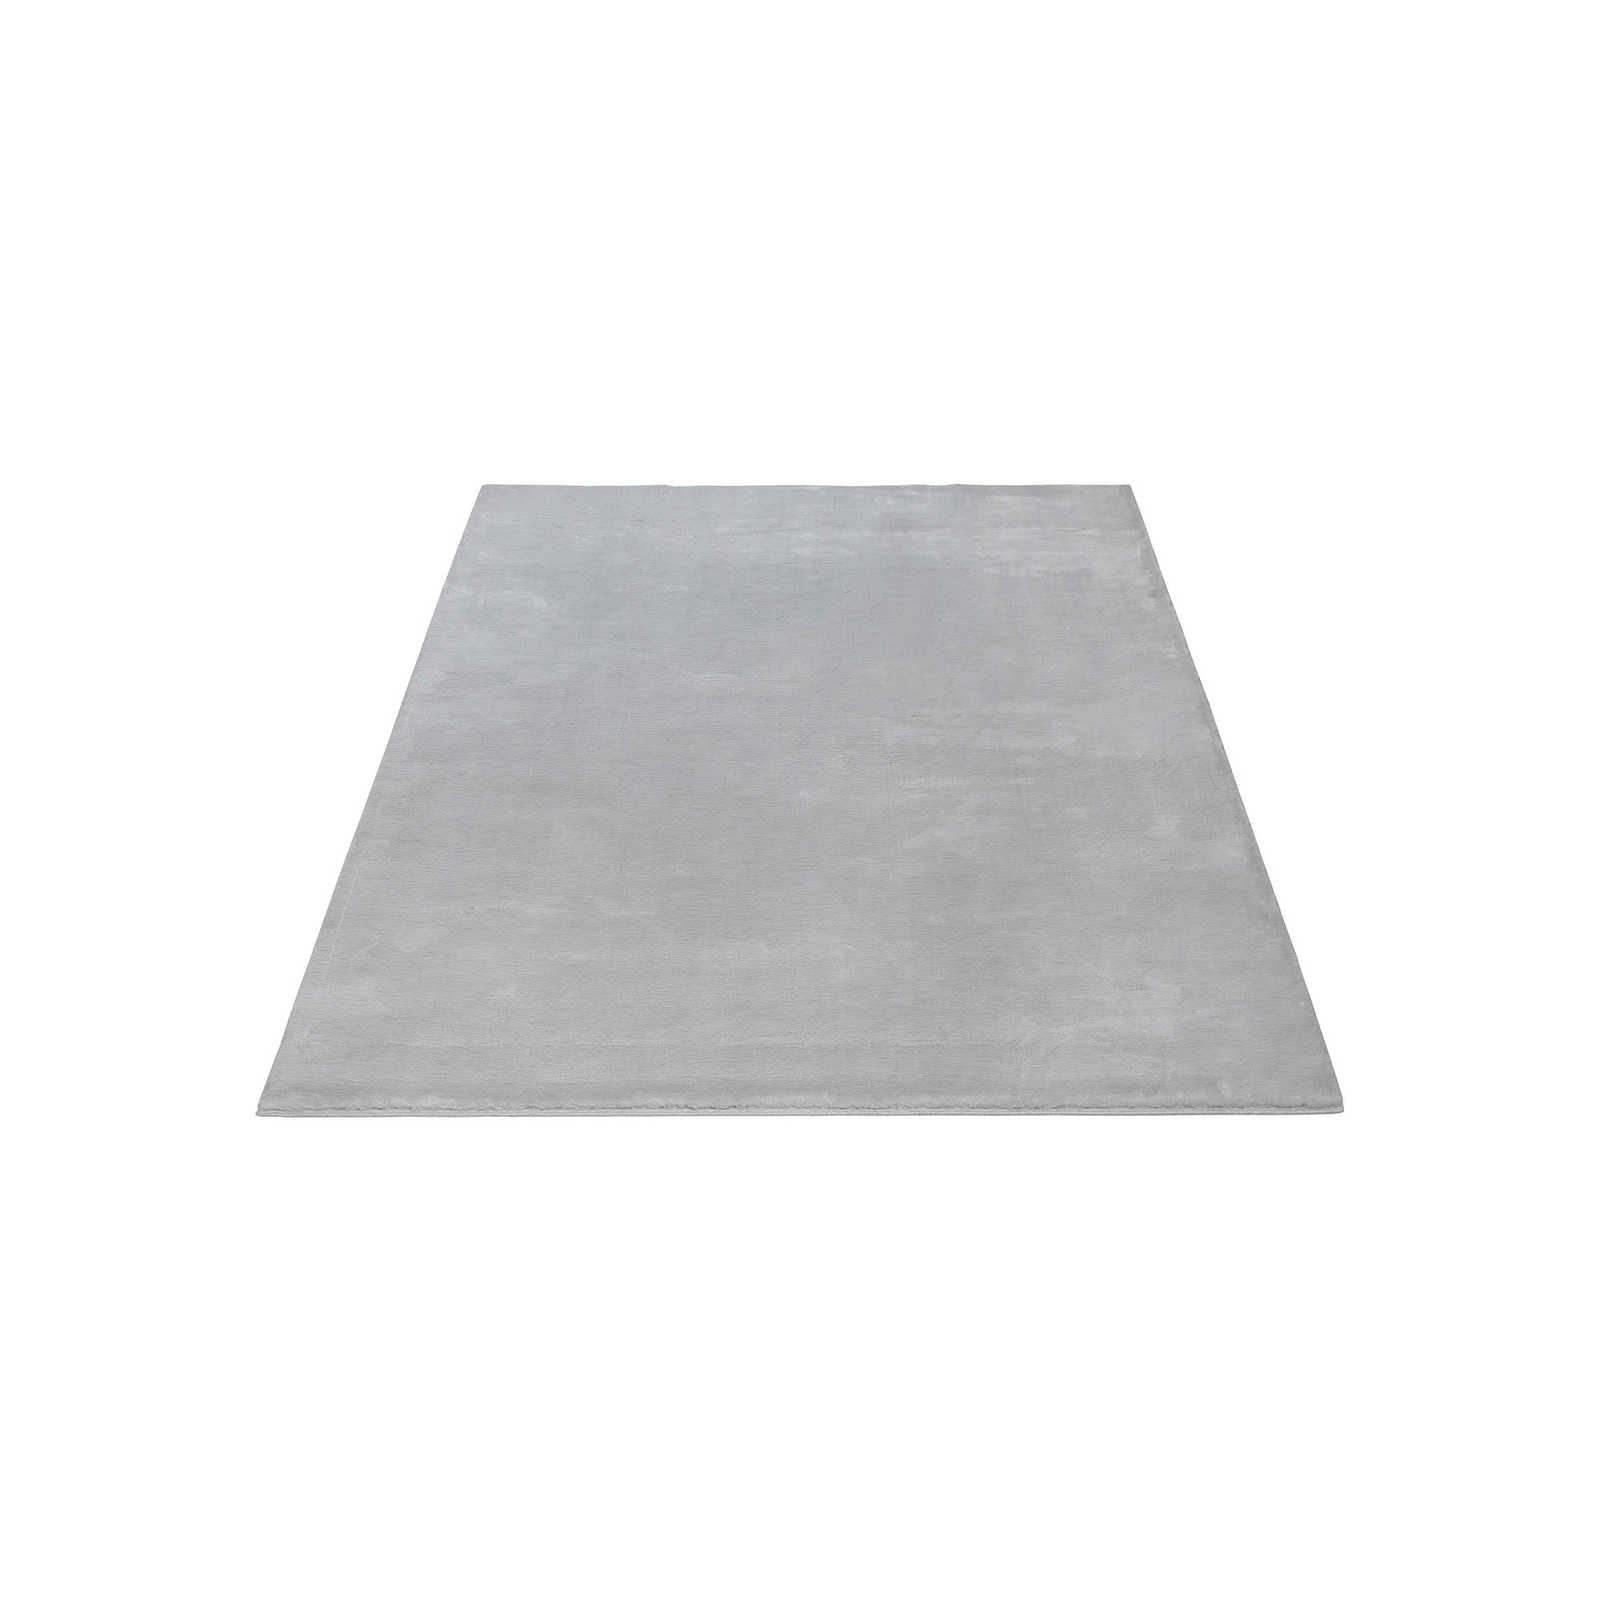 Kuscheliger Hochflor Teppich in sanften Grau – 200 x 140 cm
